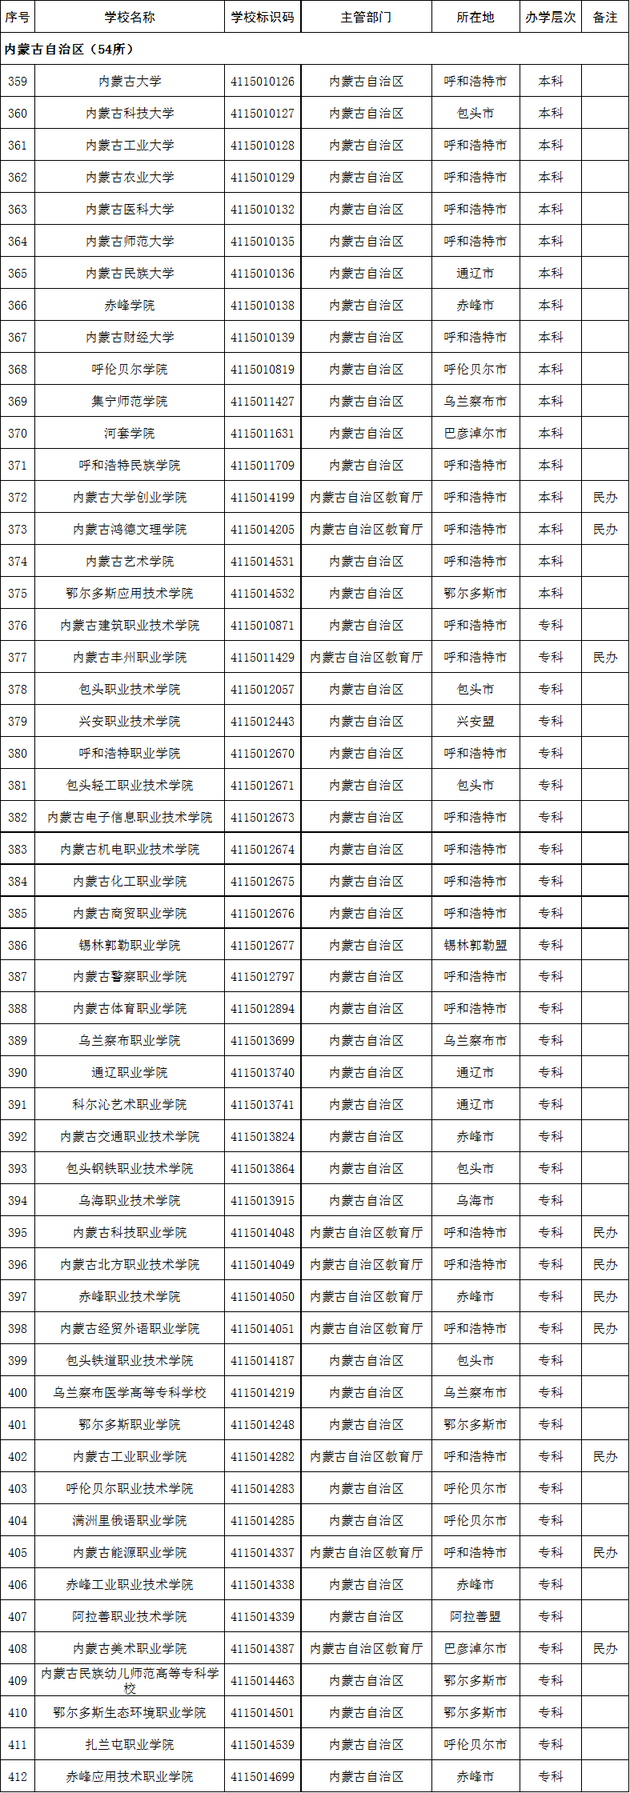 内蒙古自治区2020年高校名单(54所)